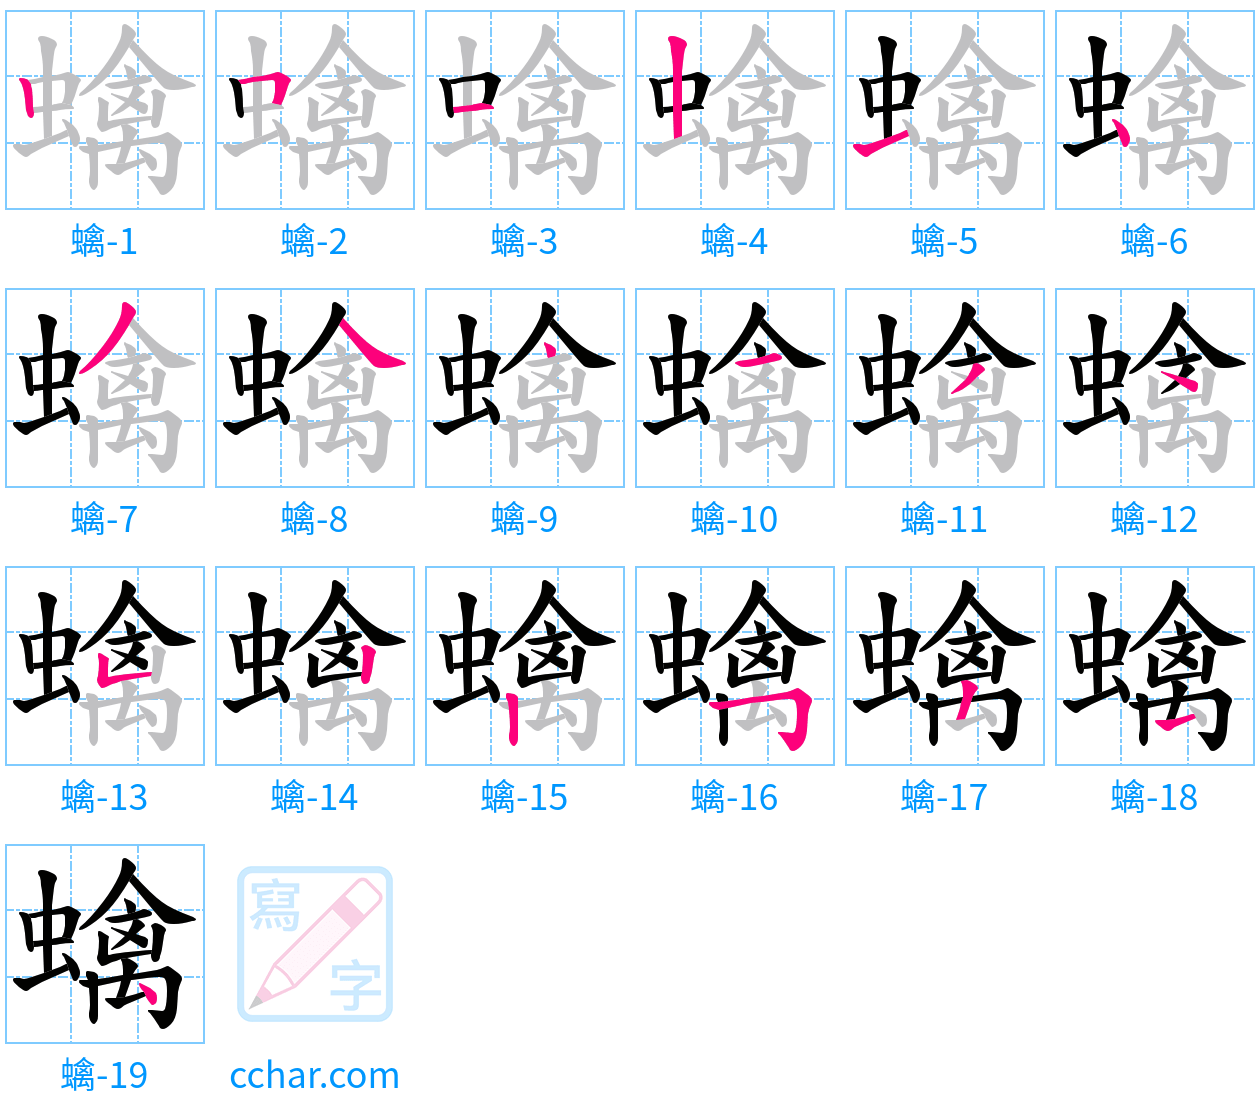 蠄 stroke order step-by-step diagram